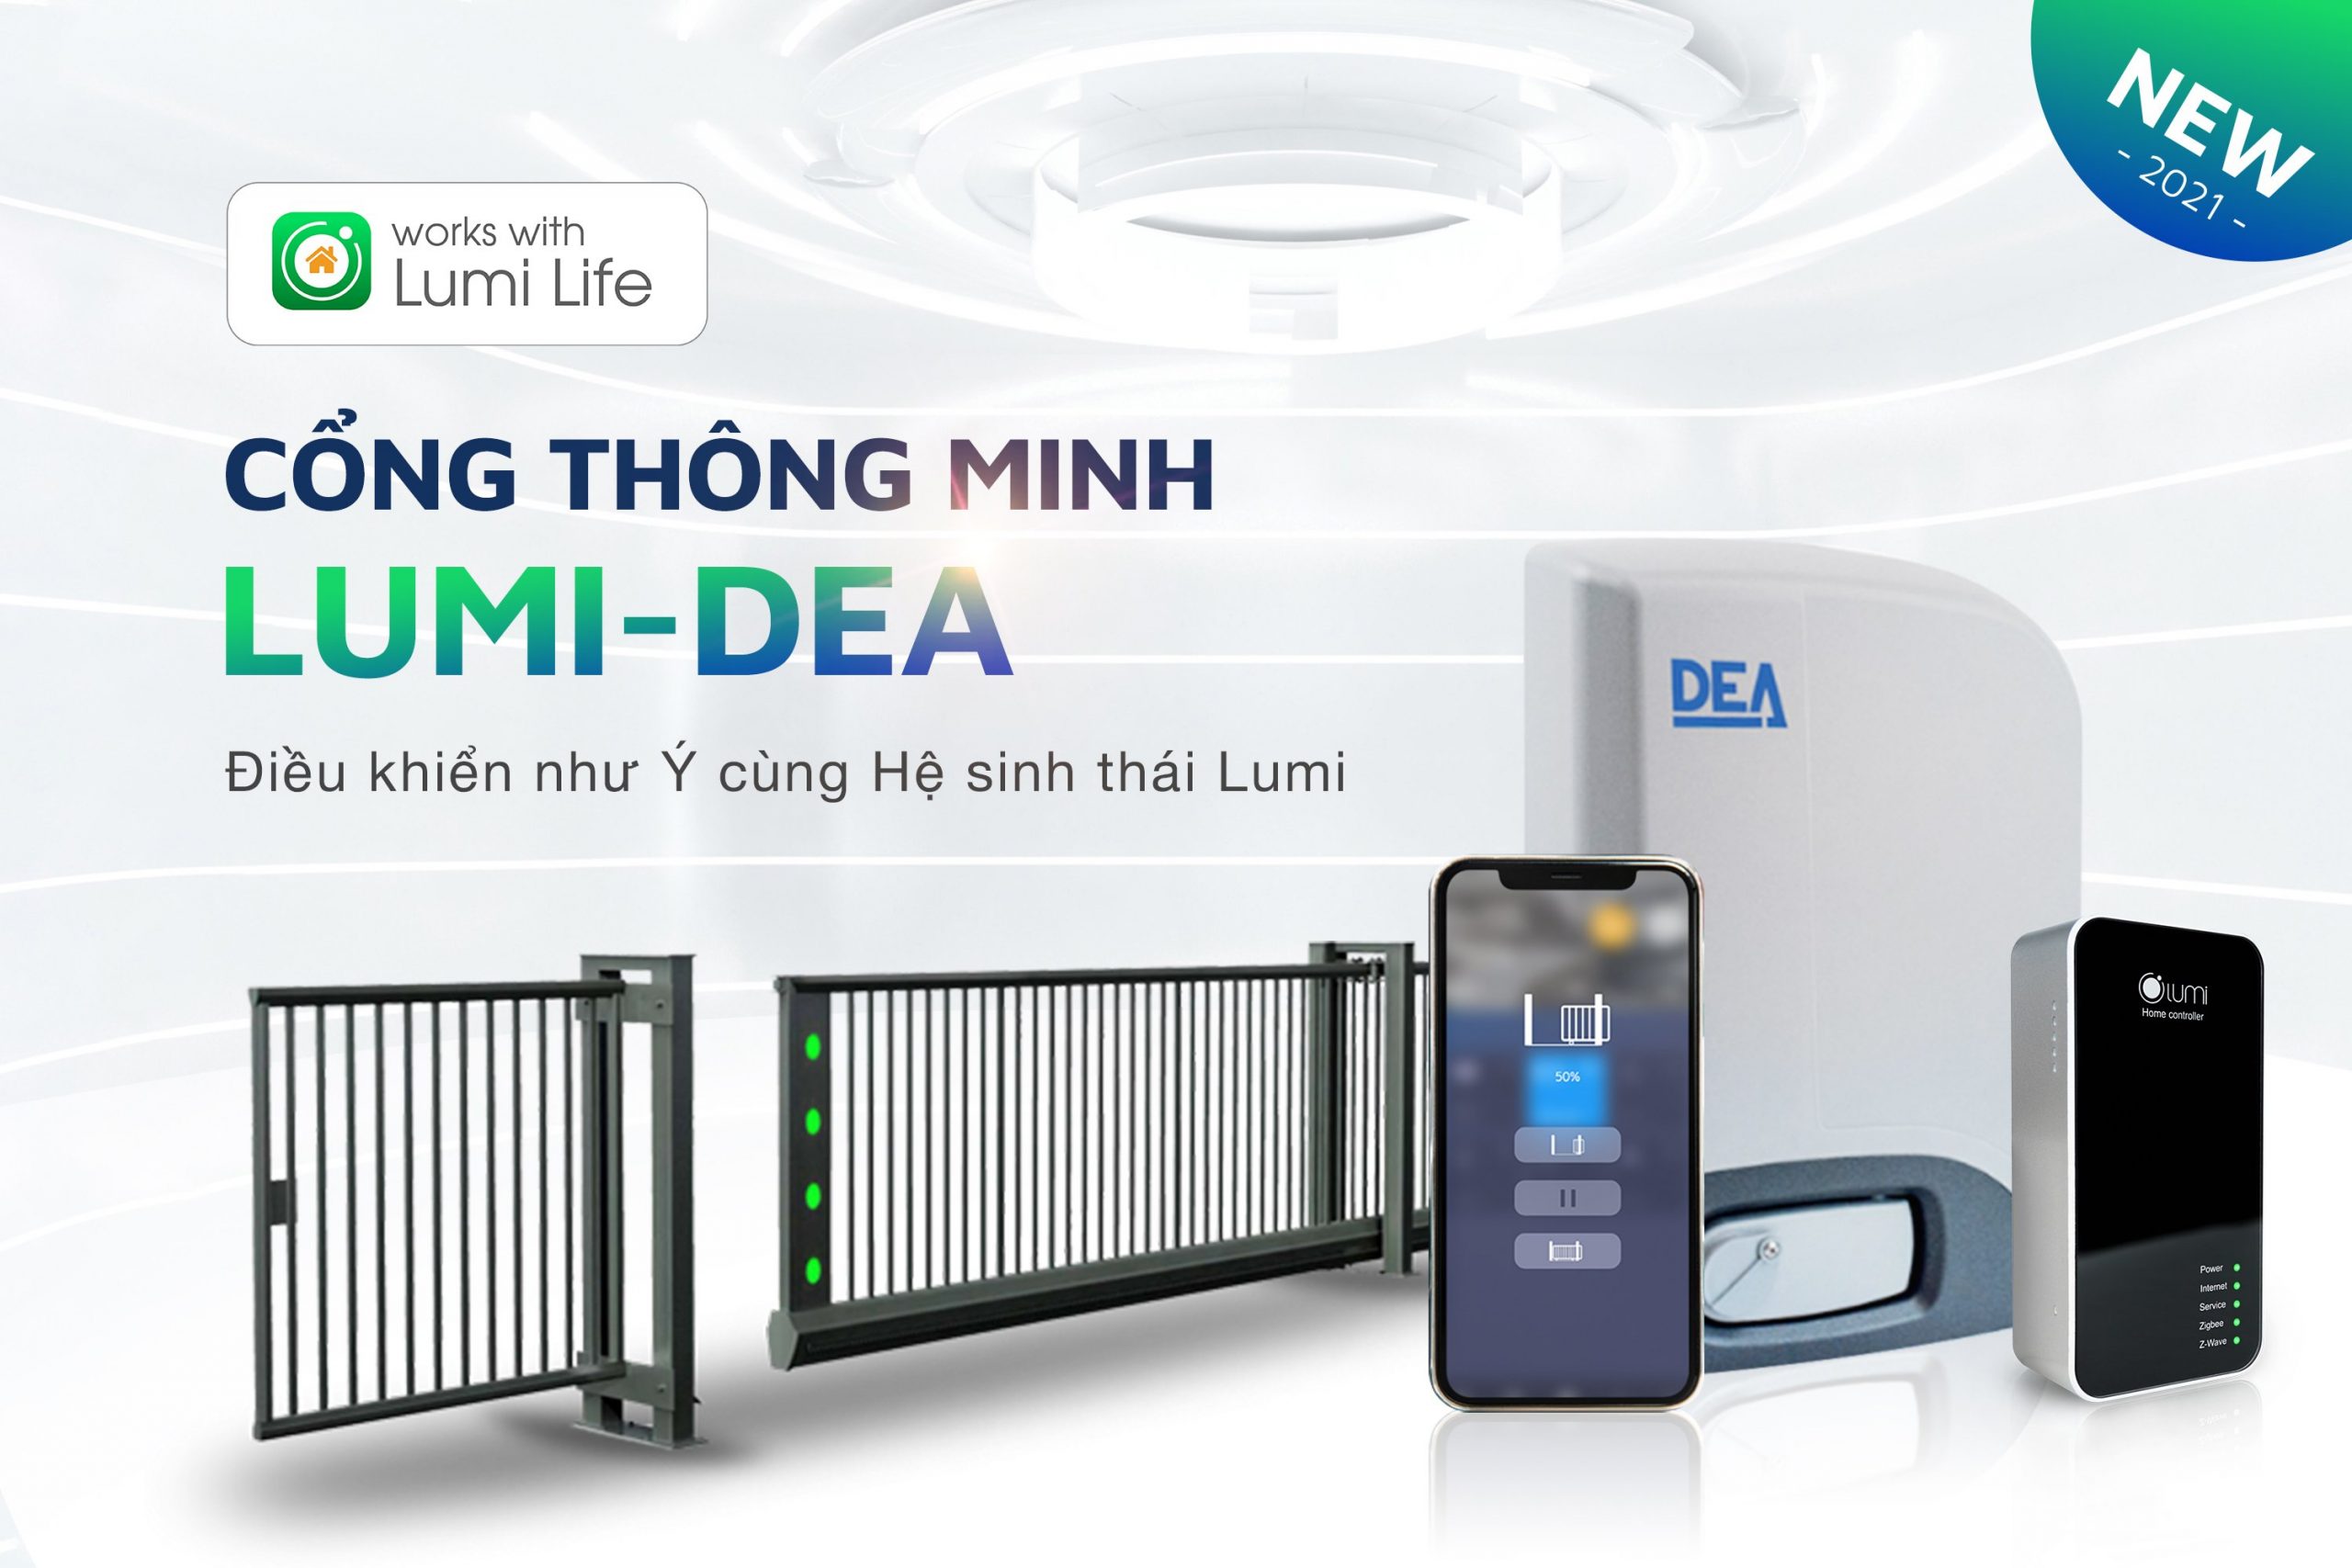 Nhà thông minh Lumi kết hợp với Dea ra mắt động cơ cổng thông minh